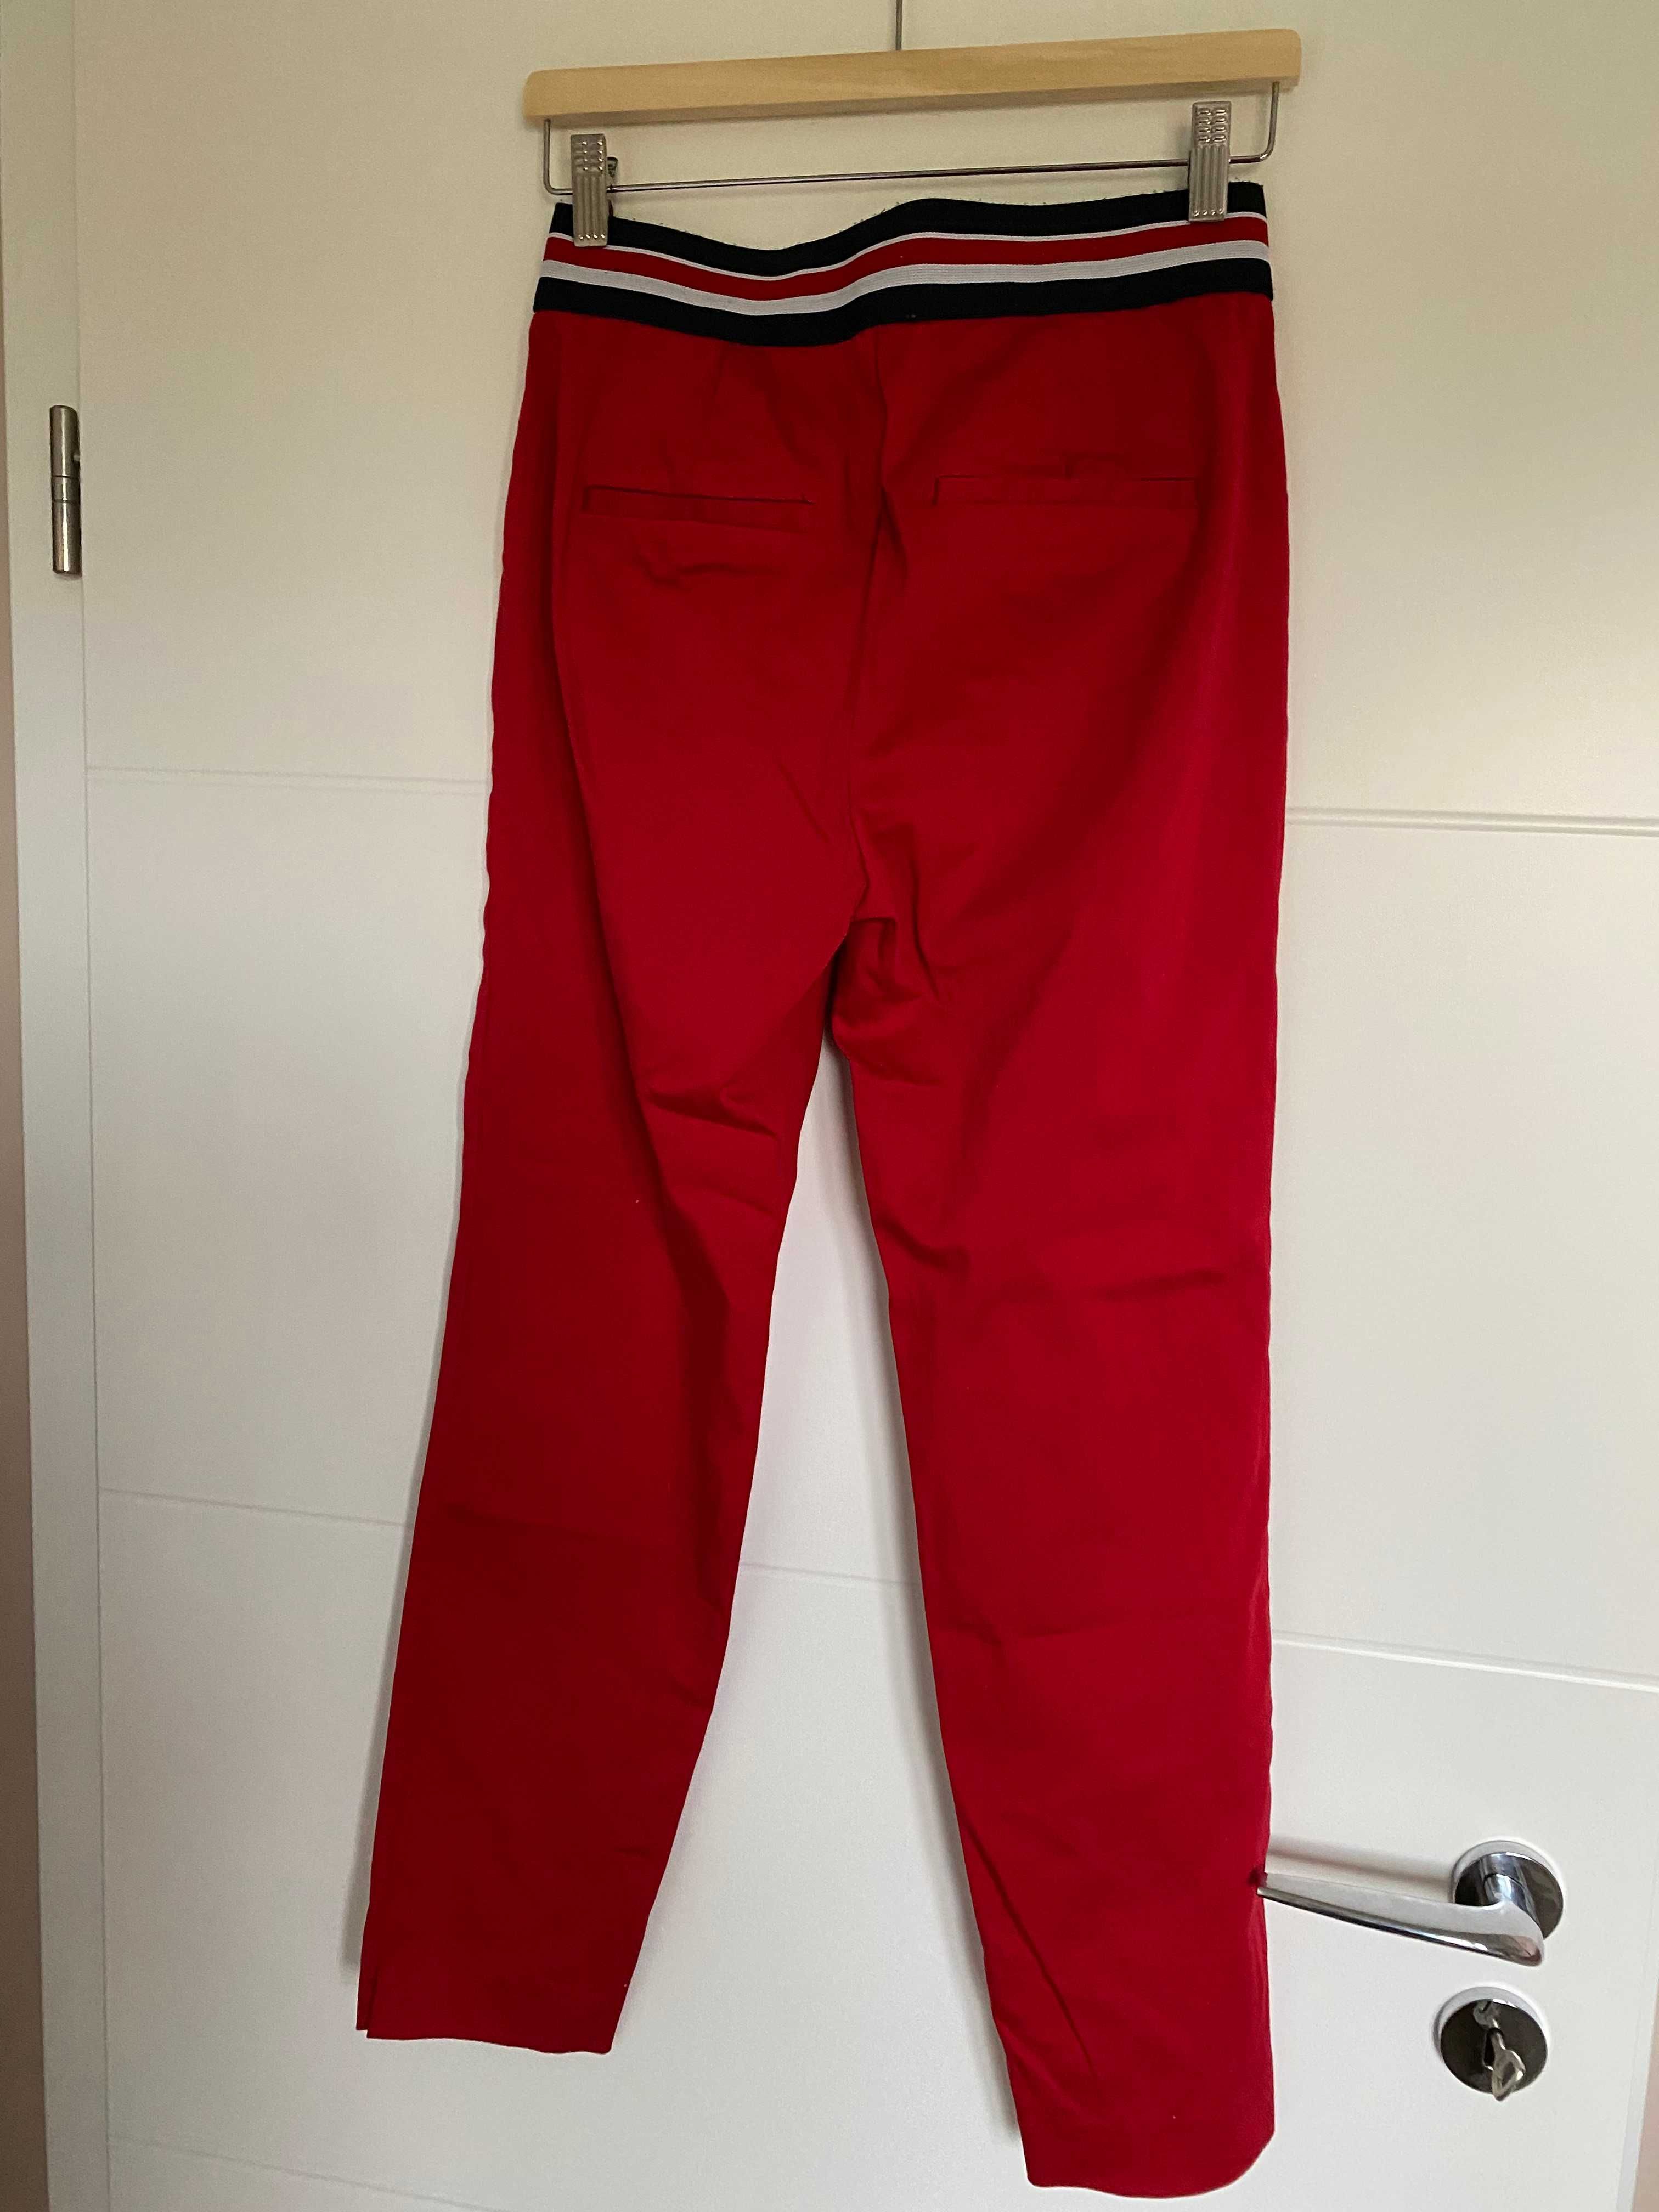 Spodnie Reserved, rozmiar 40, czerwone, ozdobny pas